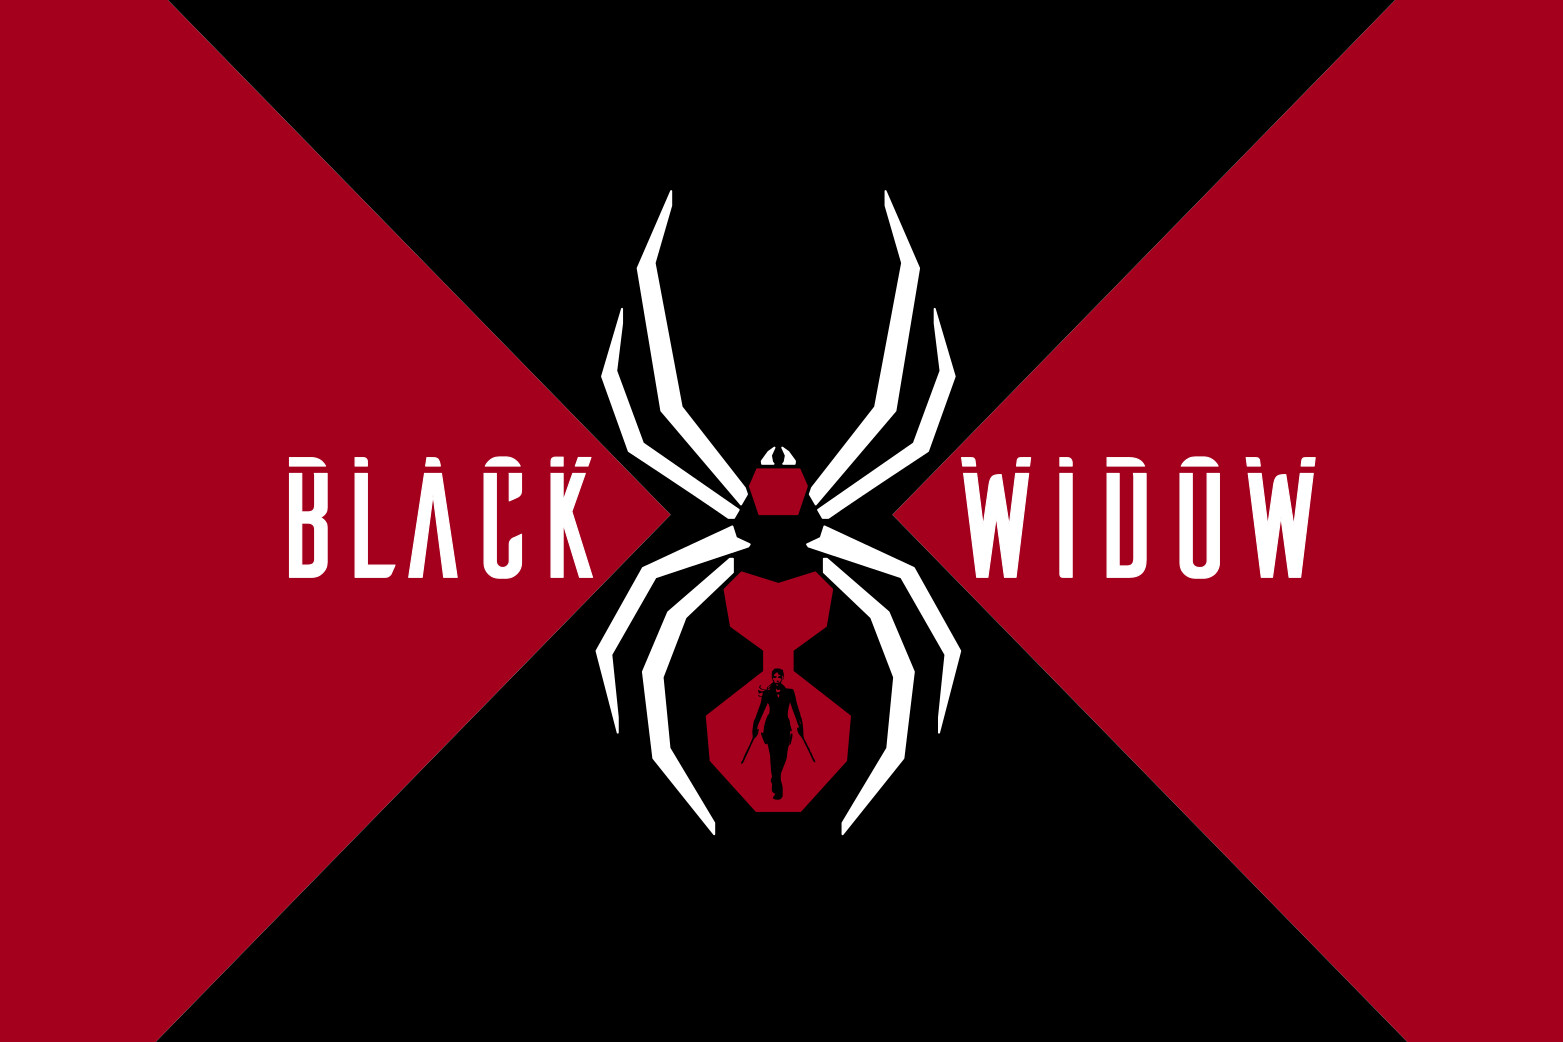 ArtStation - Black Widow Logo